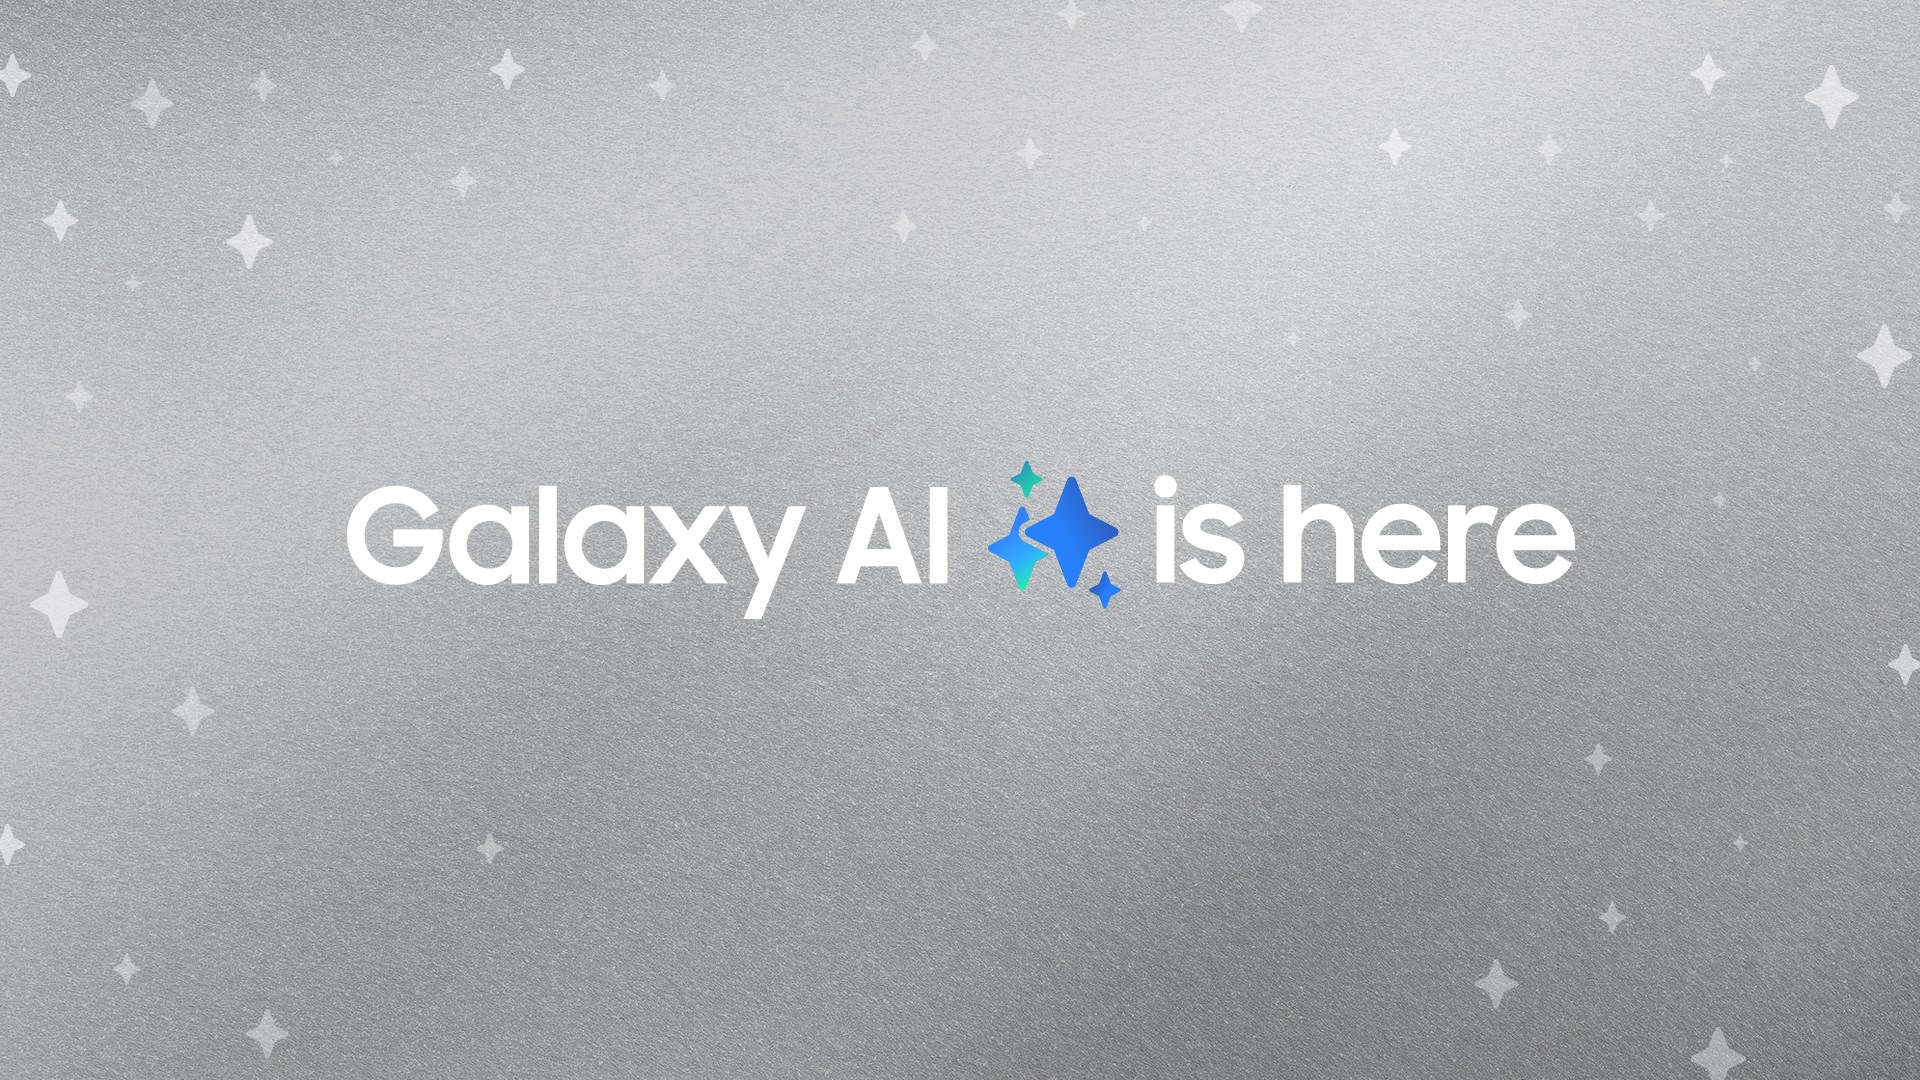 Galaxy AI özellikleri 2025’e kadar ücretsiz, peki sonra?